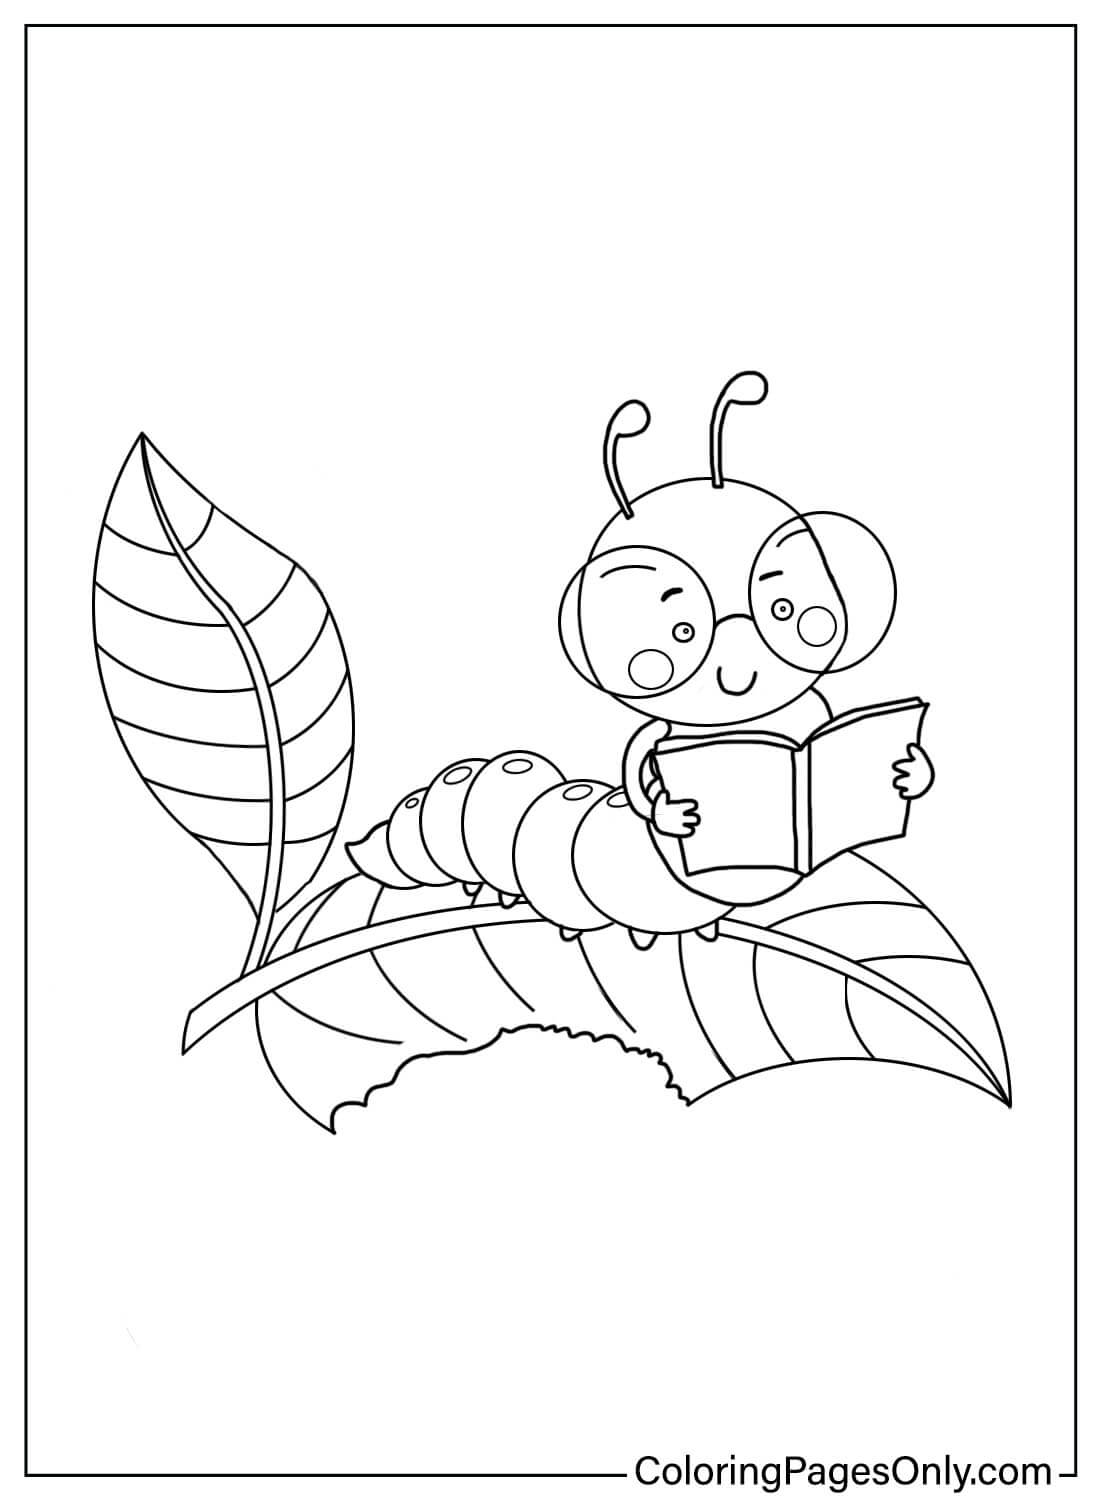 Página para colorir gratuita da Caterpillar da Caterpillar